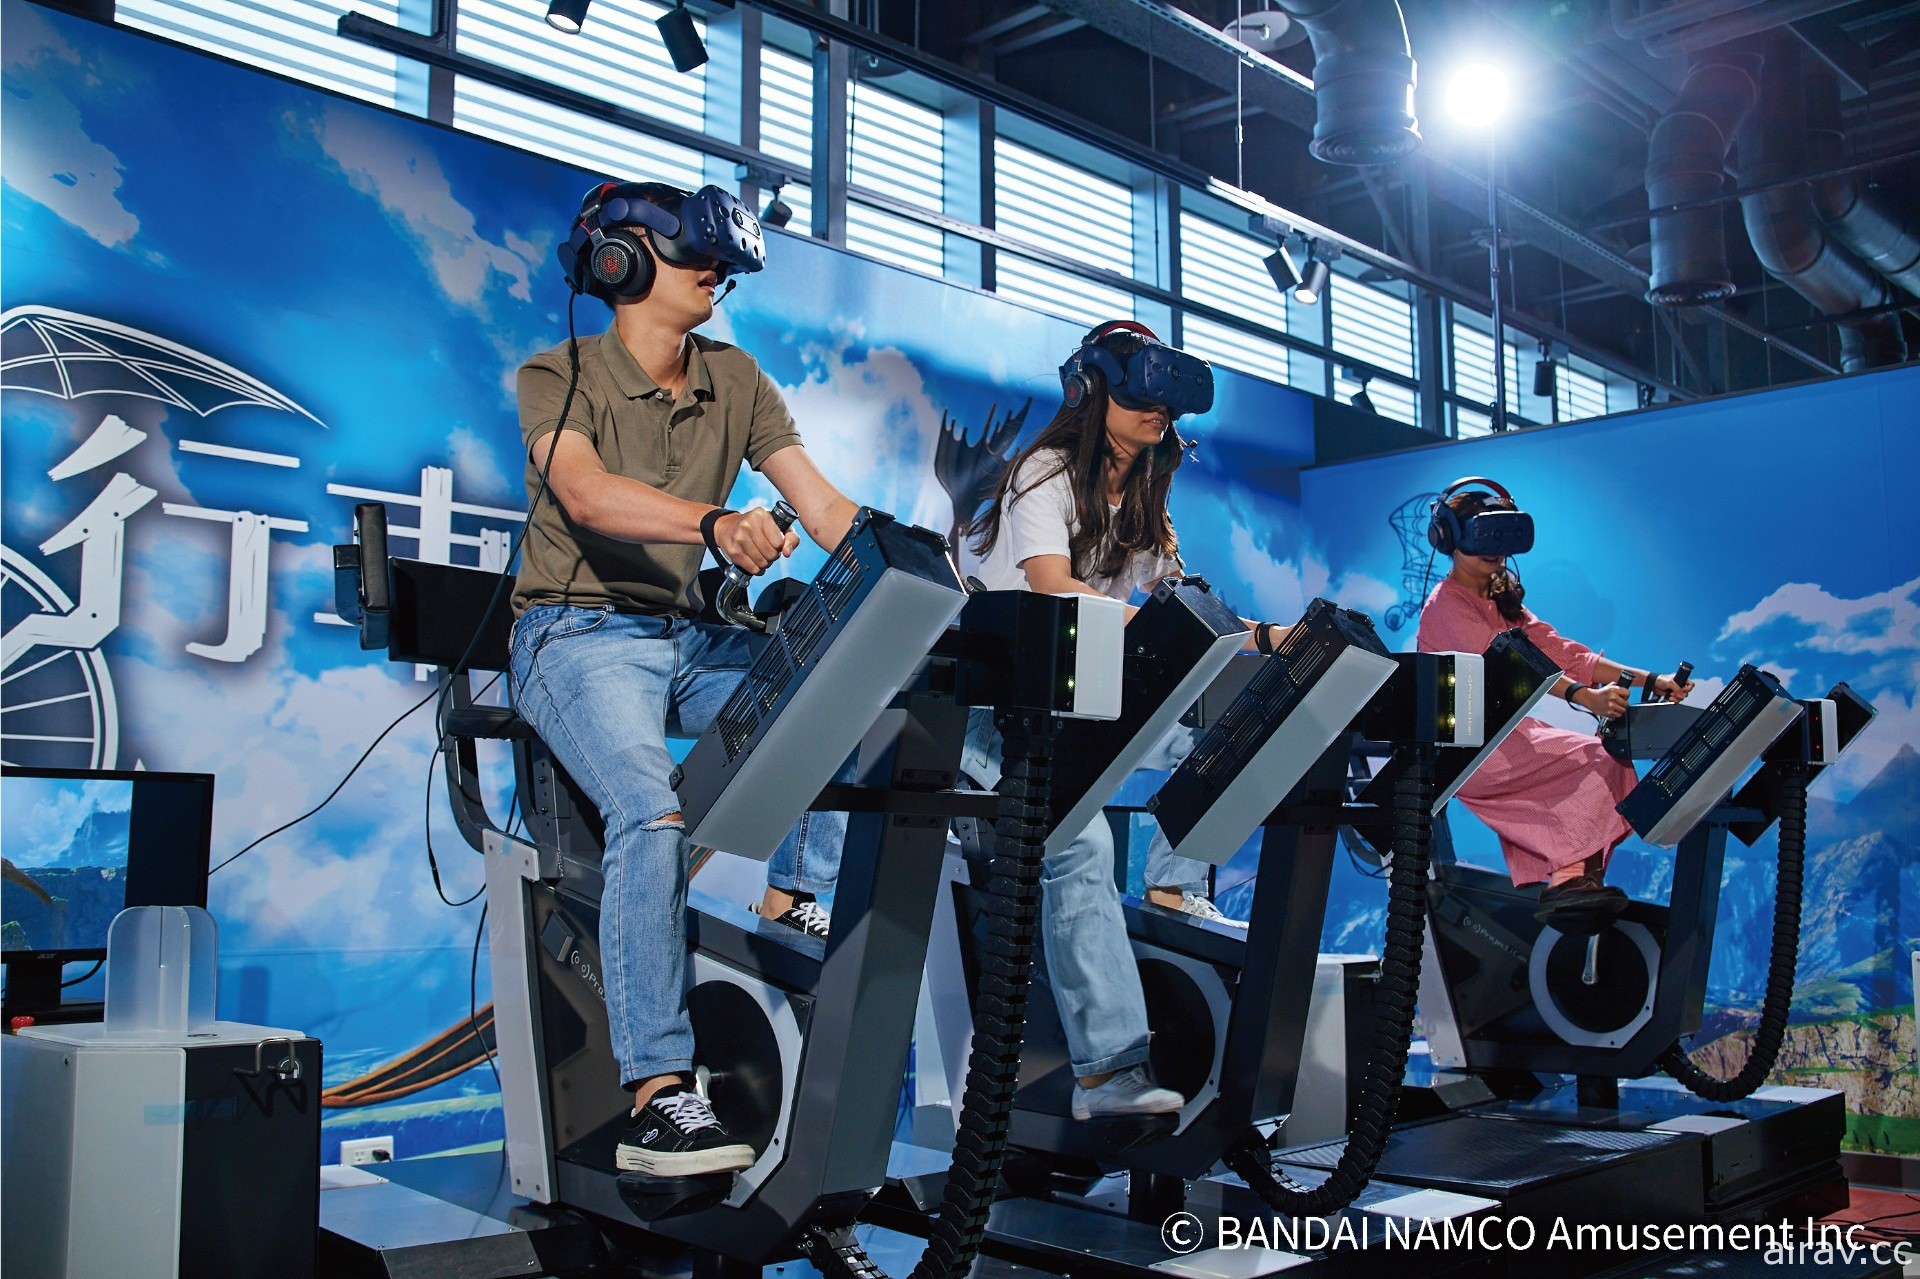 宏汇广场 VR Zone 海外独家引进《太鼓之达人 VR》体感开打